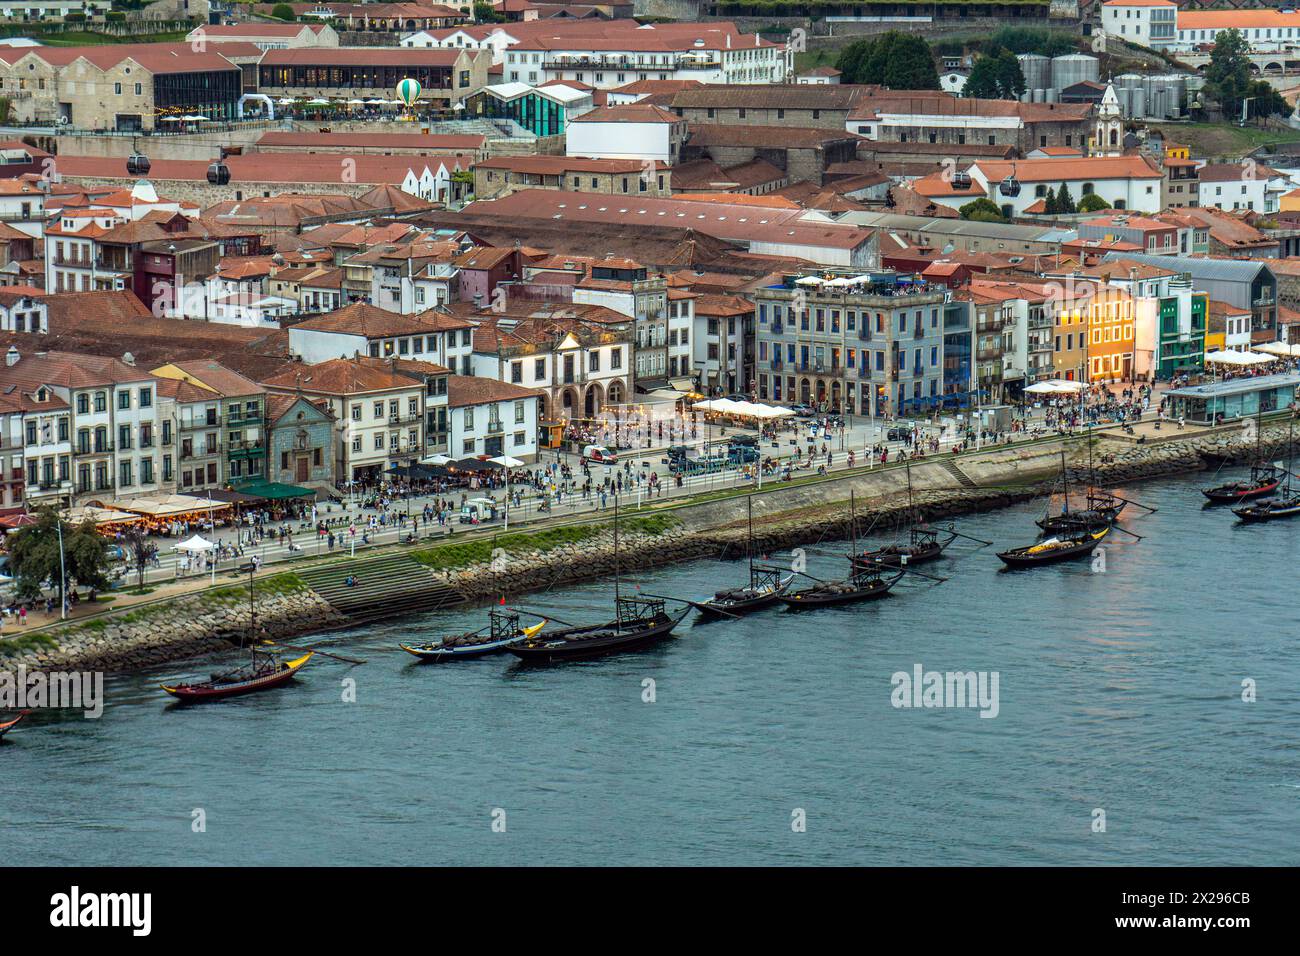 Douro und Porto Promenade aus der Vogelperspektive mit den alten Häusern, Ragelas, klassischen Booten für die Touristenrouten der 6 Brücken und der r Stockfoto